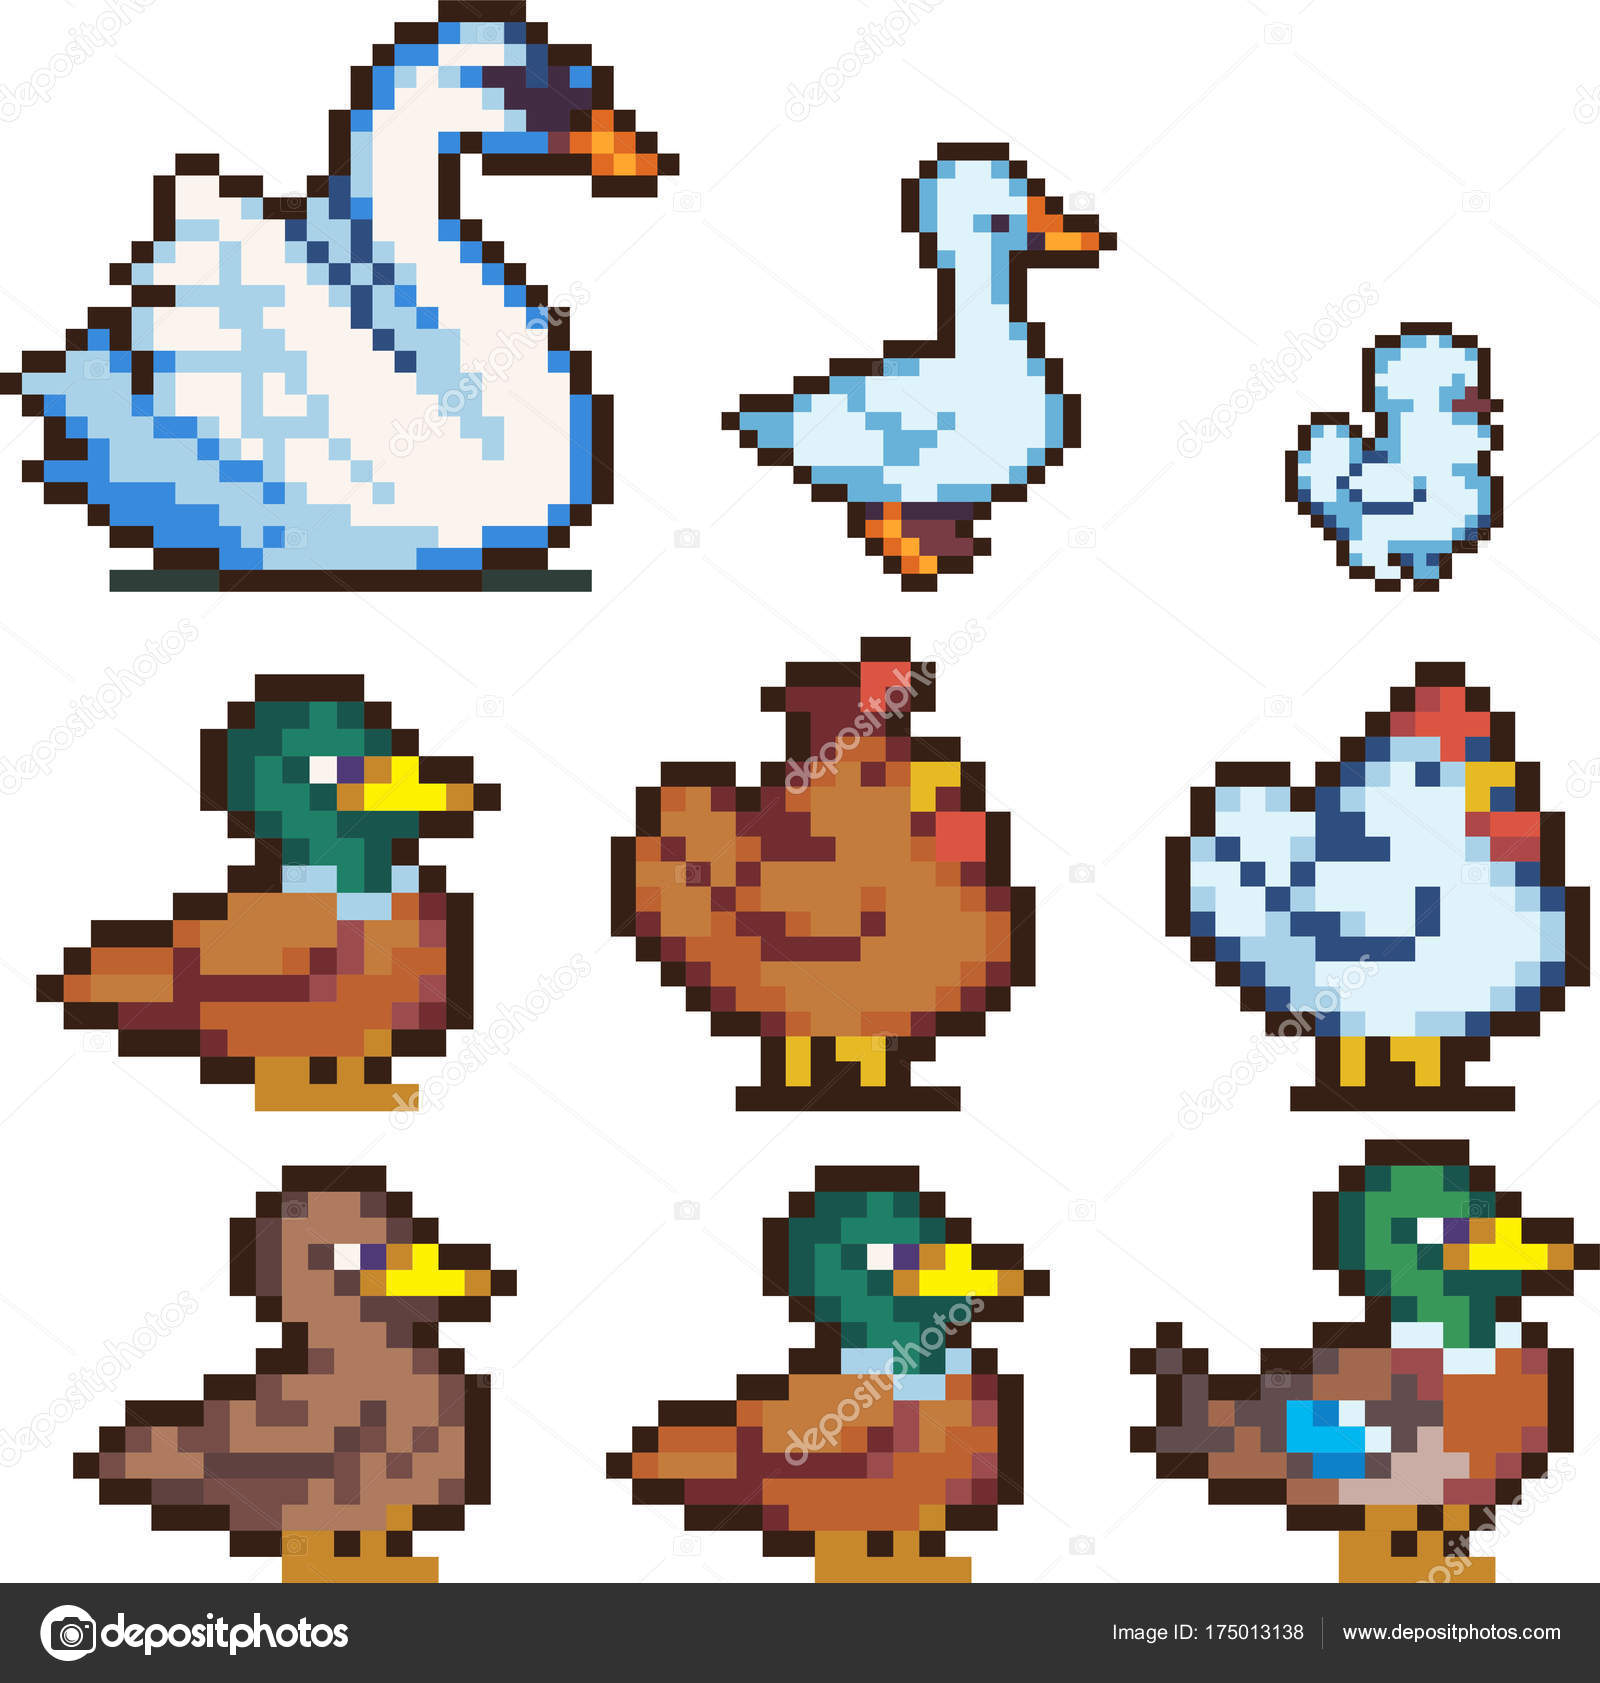 Conjunto de pássaros pixel vetor(es) de stock de ©Sergeymarkov 175013138